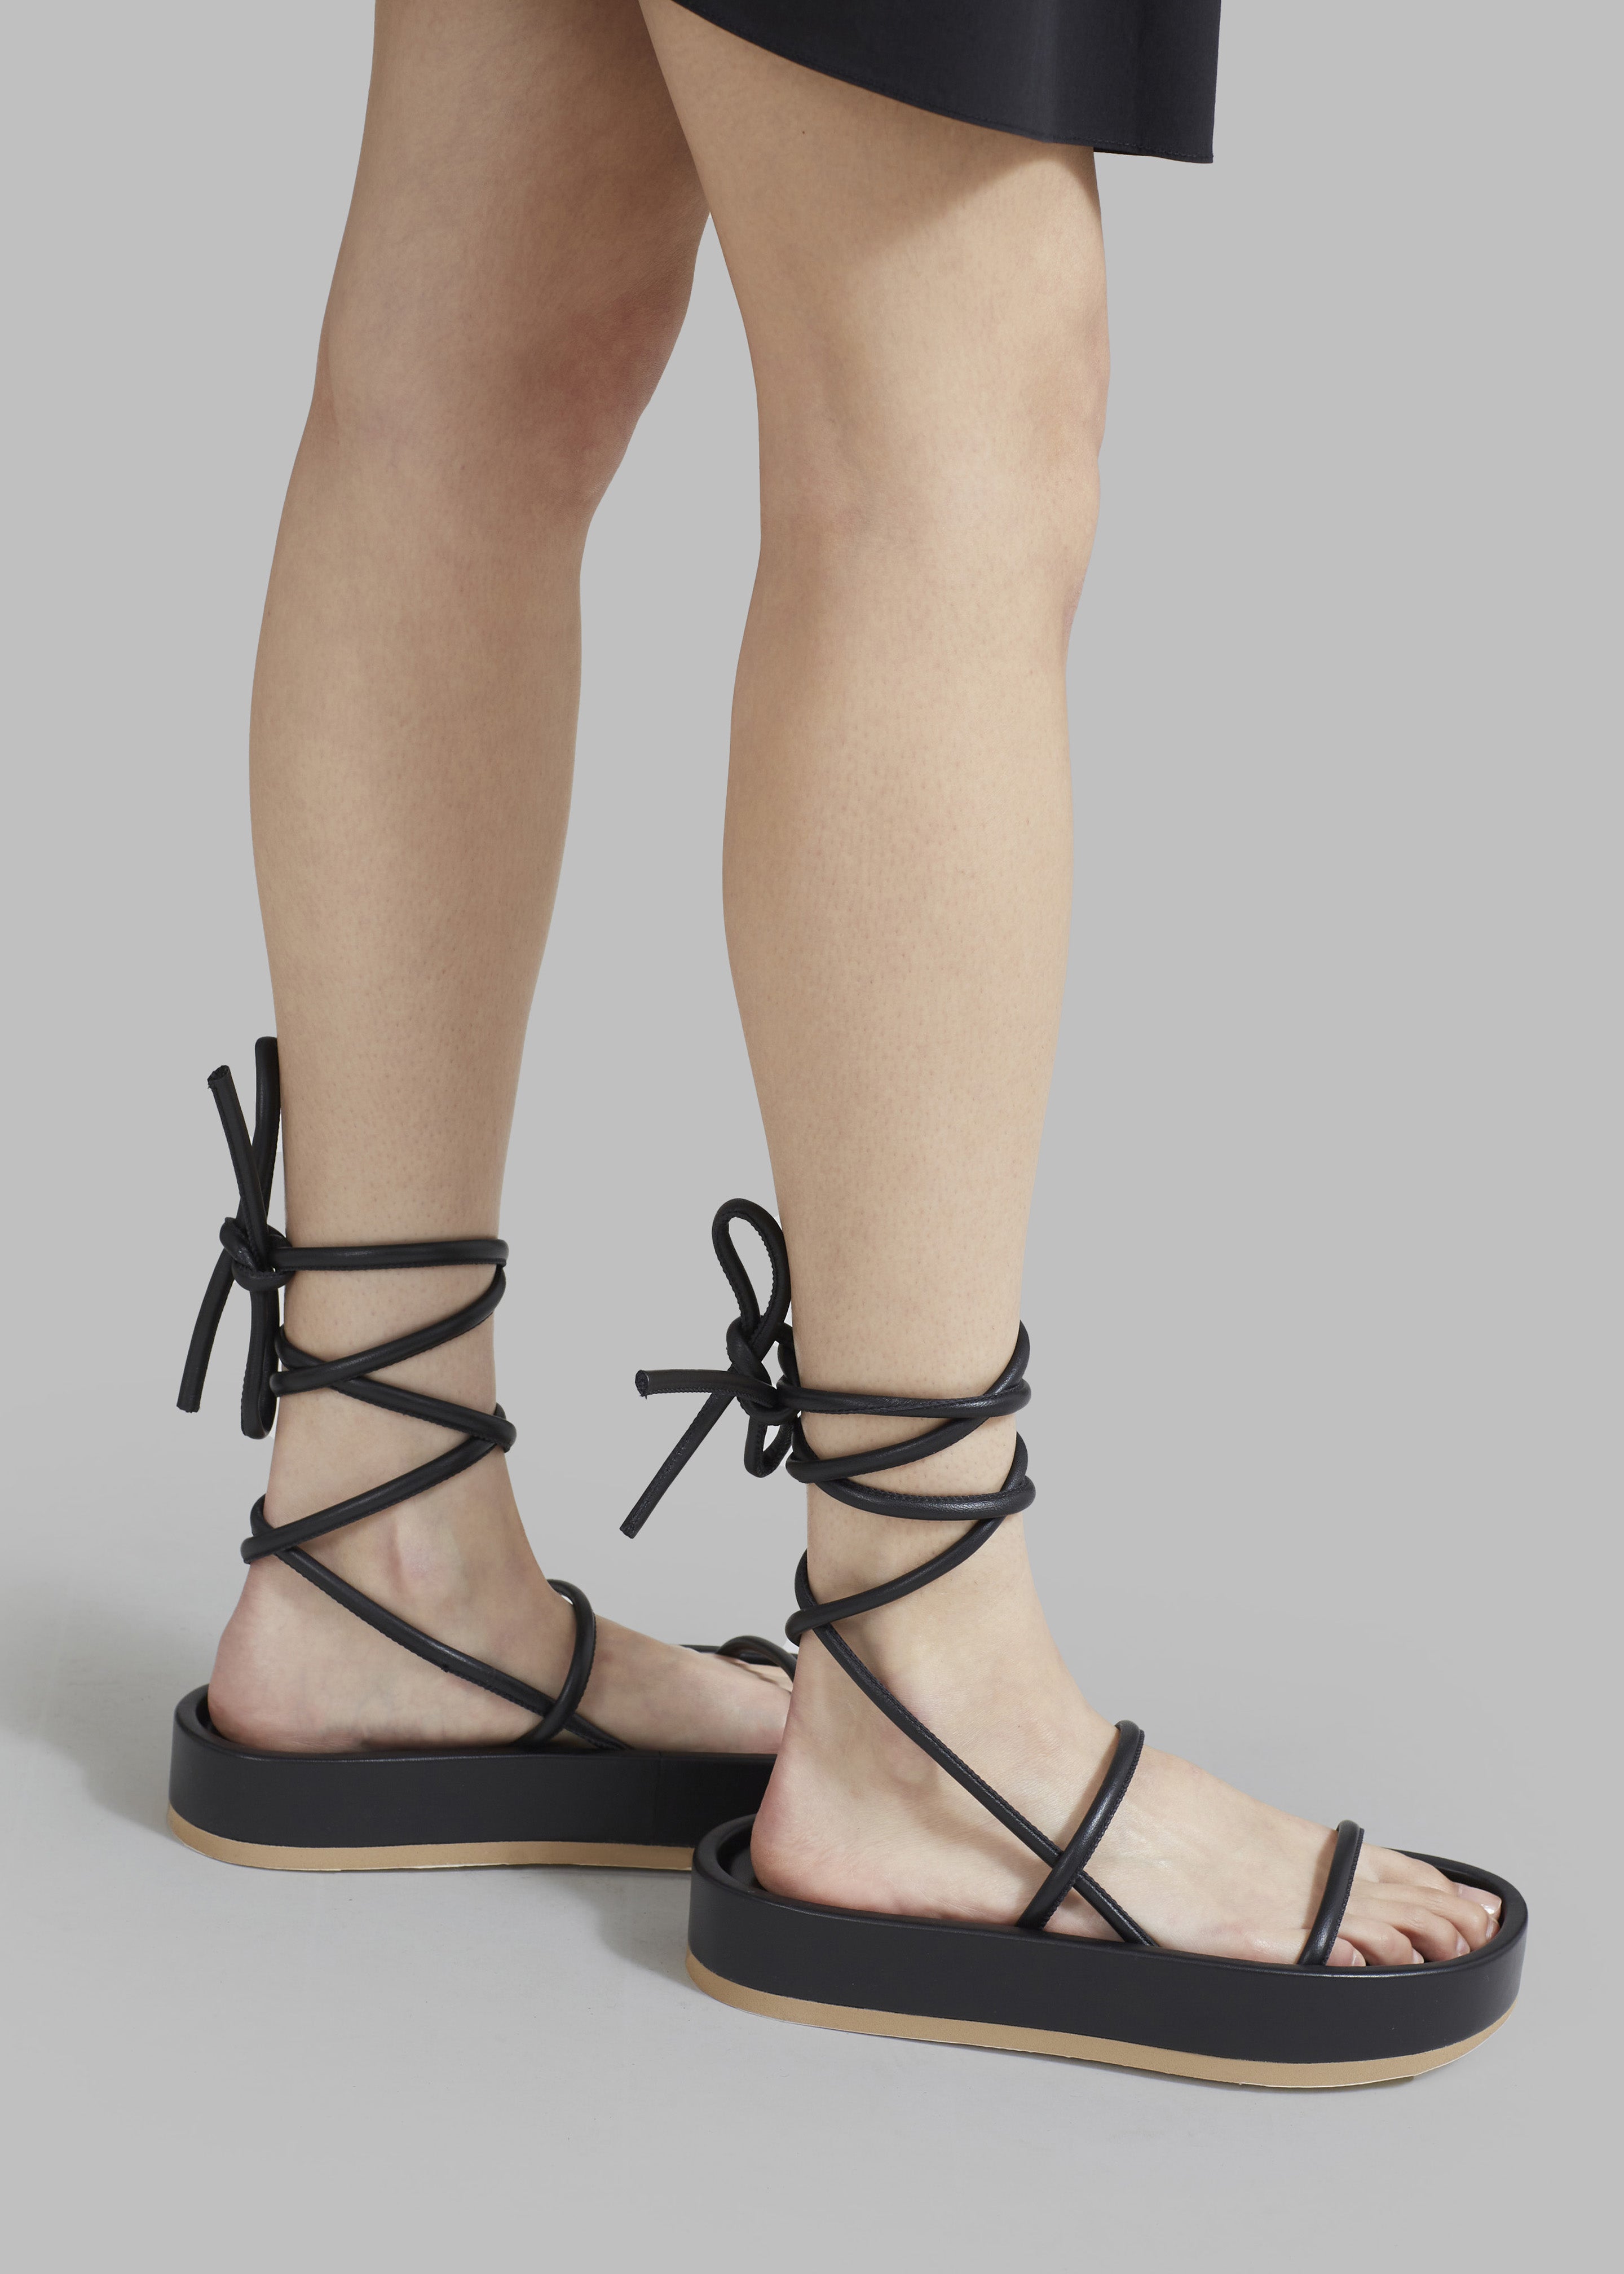 Sandals | Lace Up Strappy Platform Sandals | MissPap